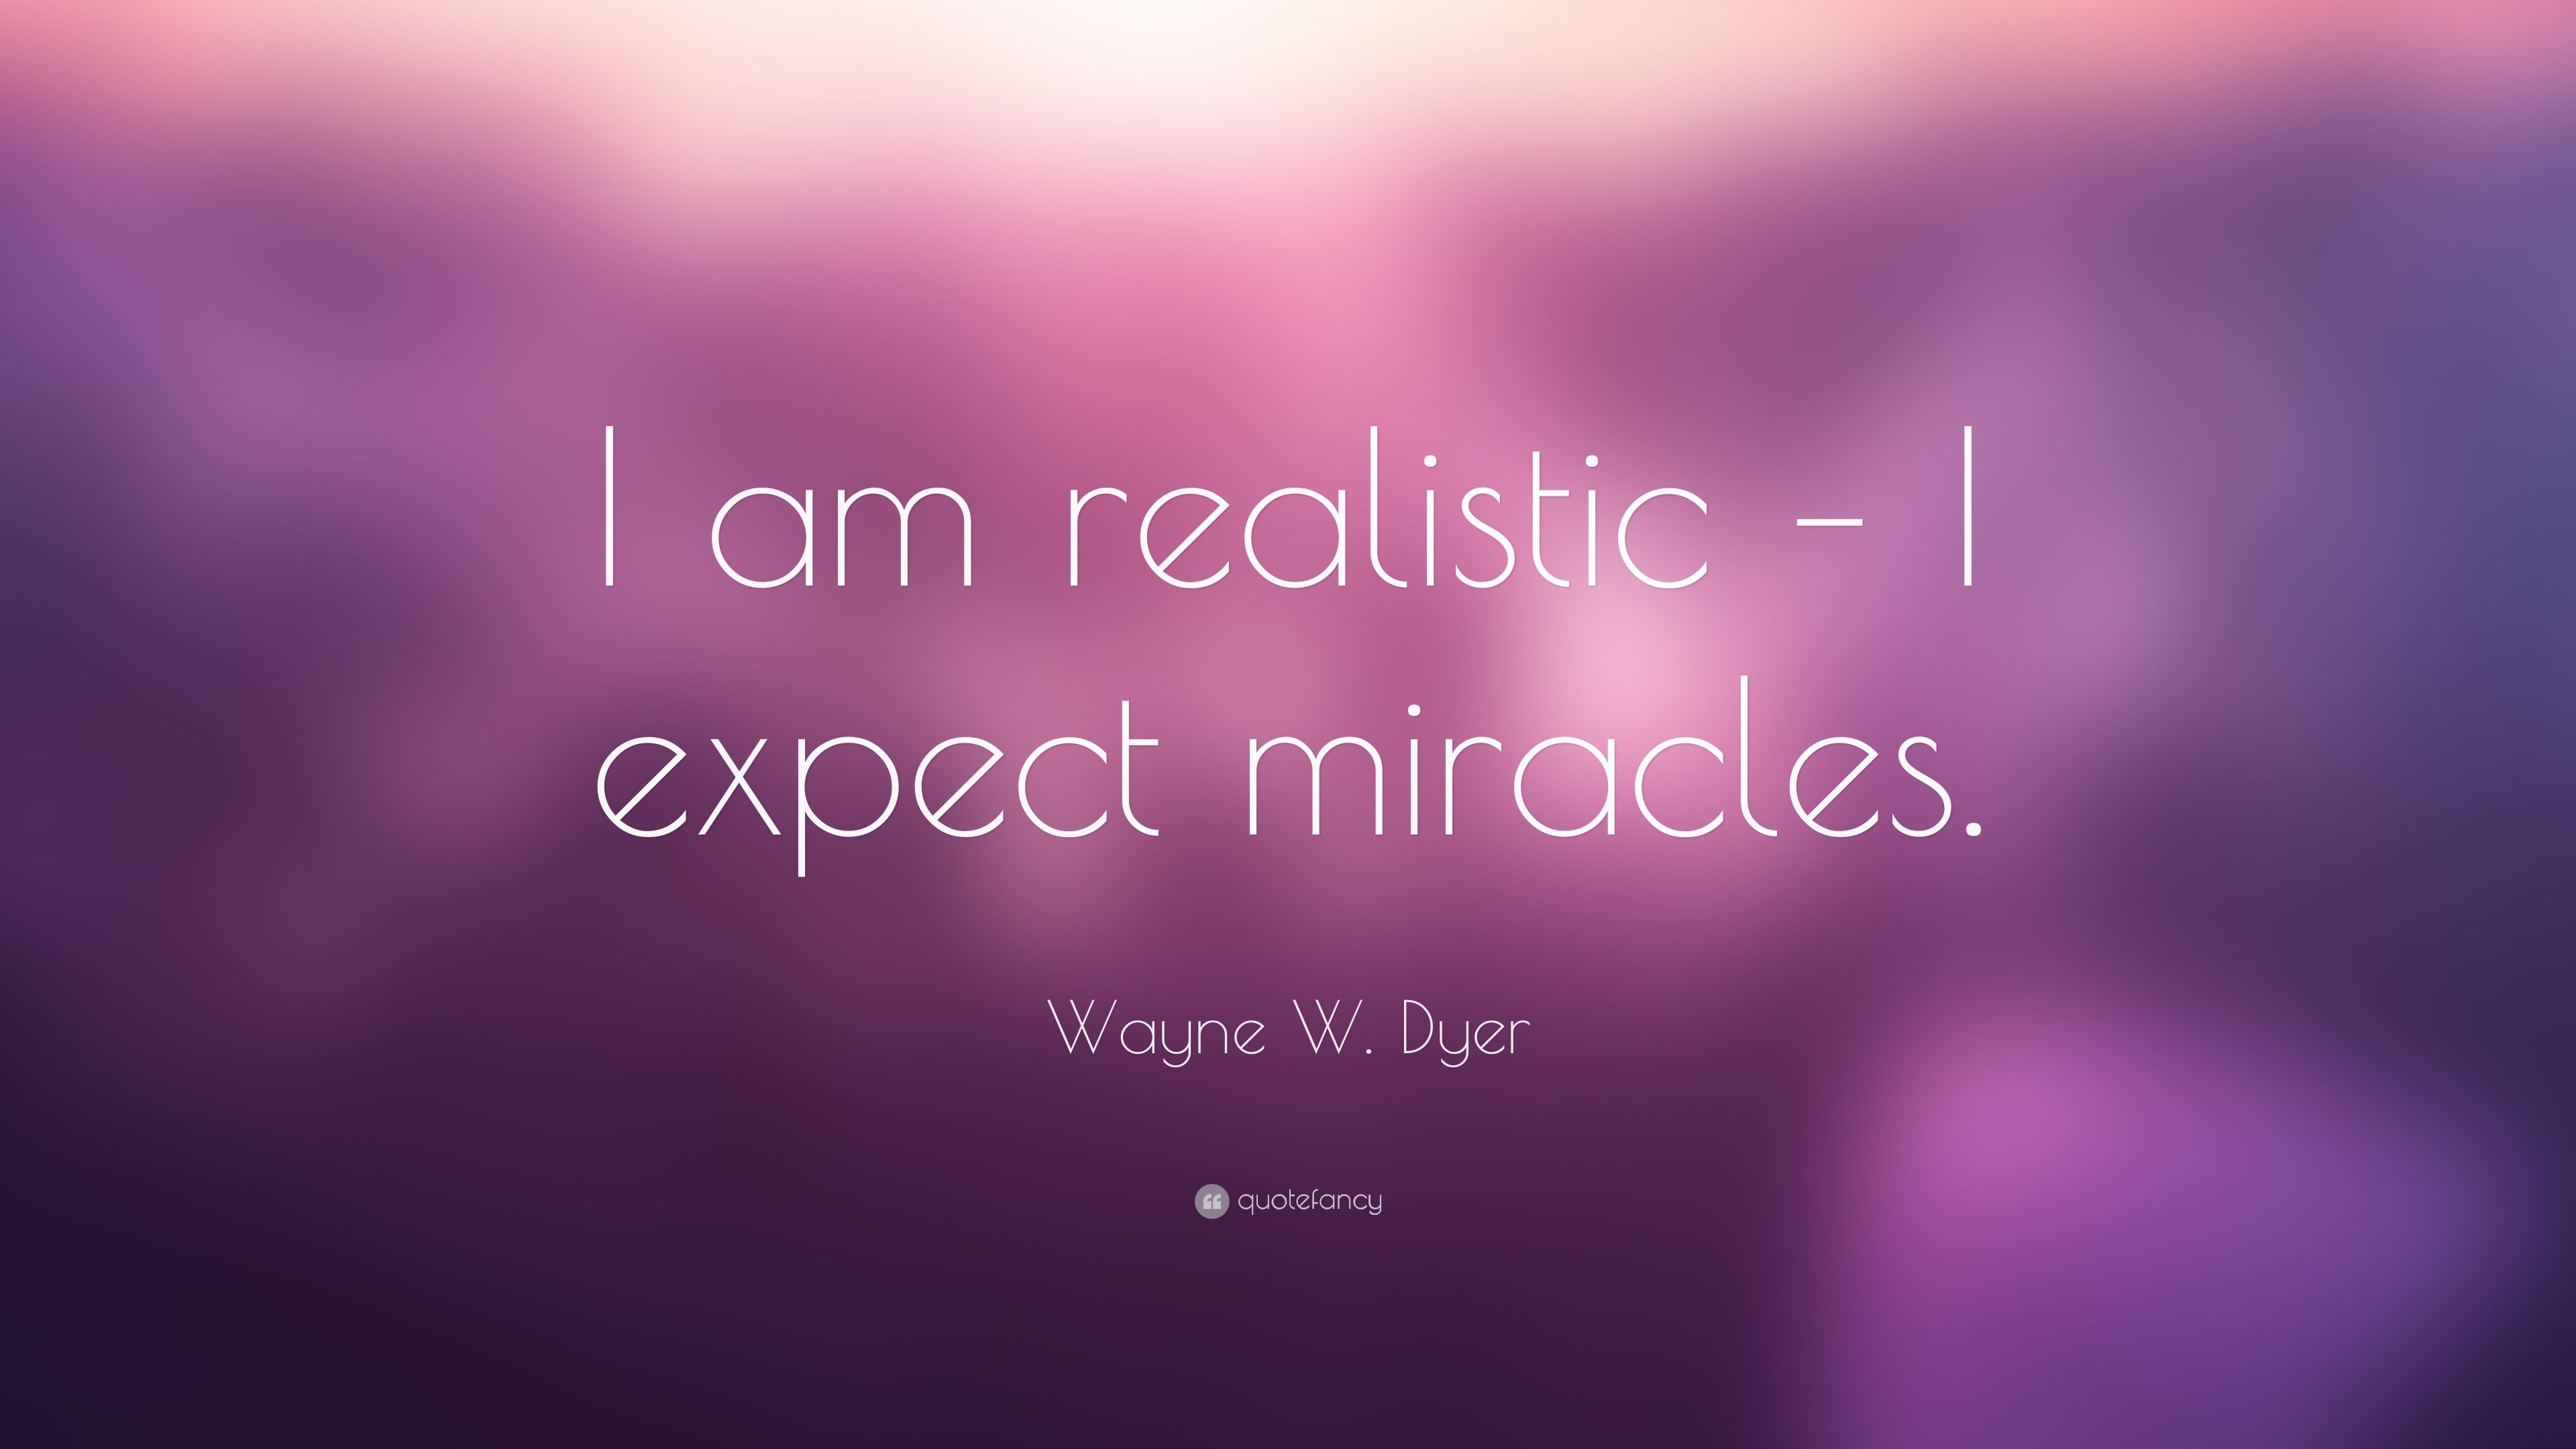 Wayne W. Dyer Quote: “I am realistic